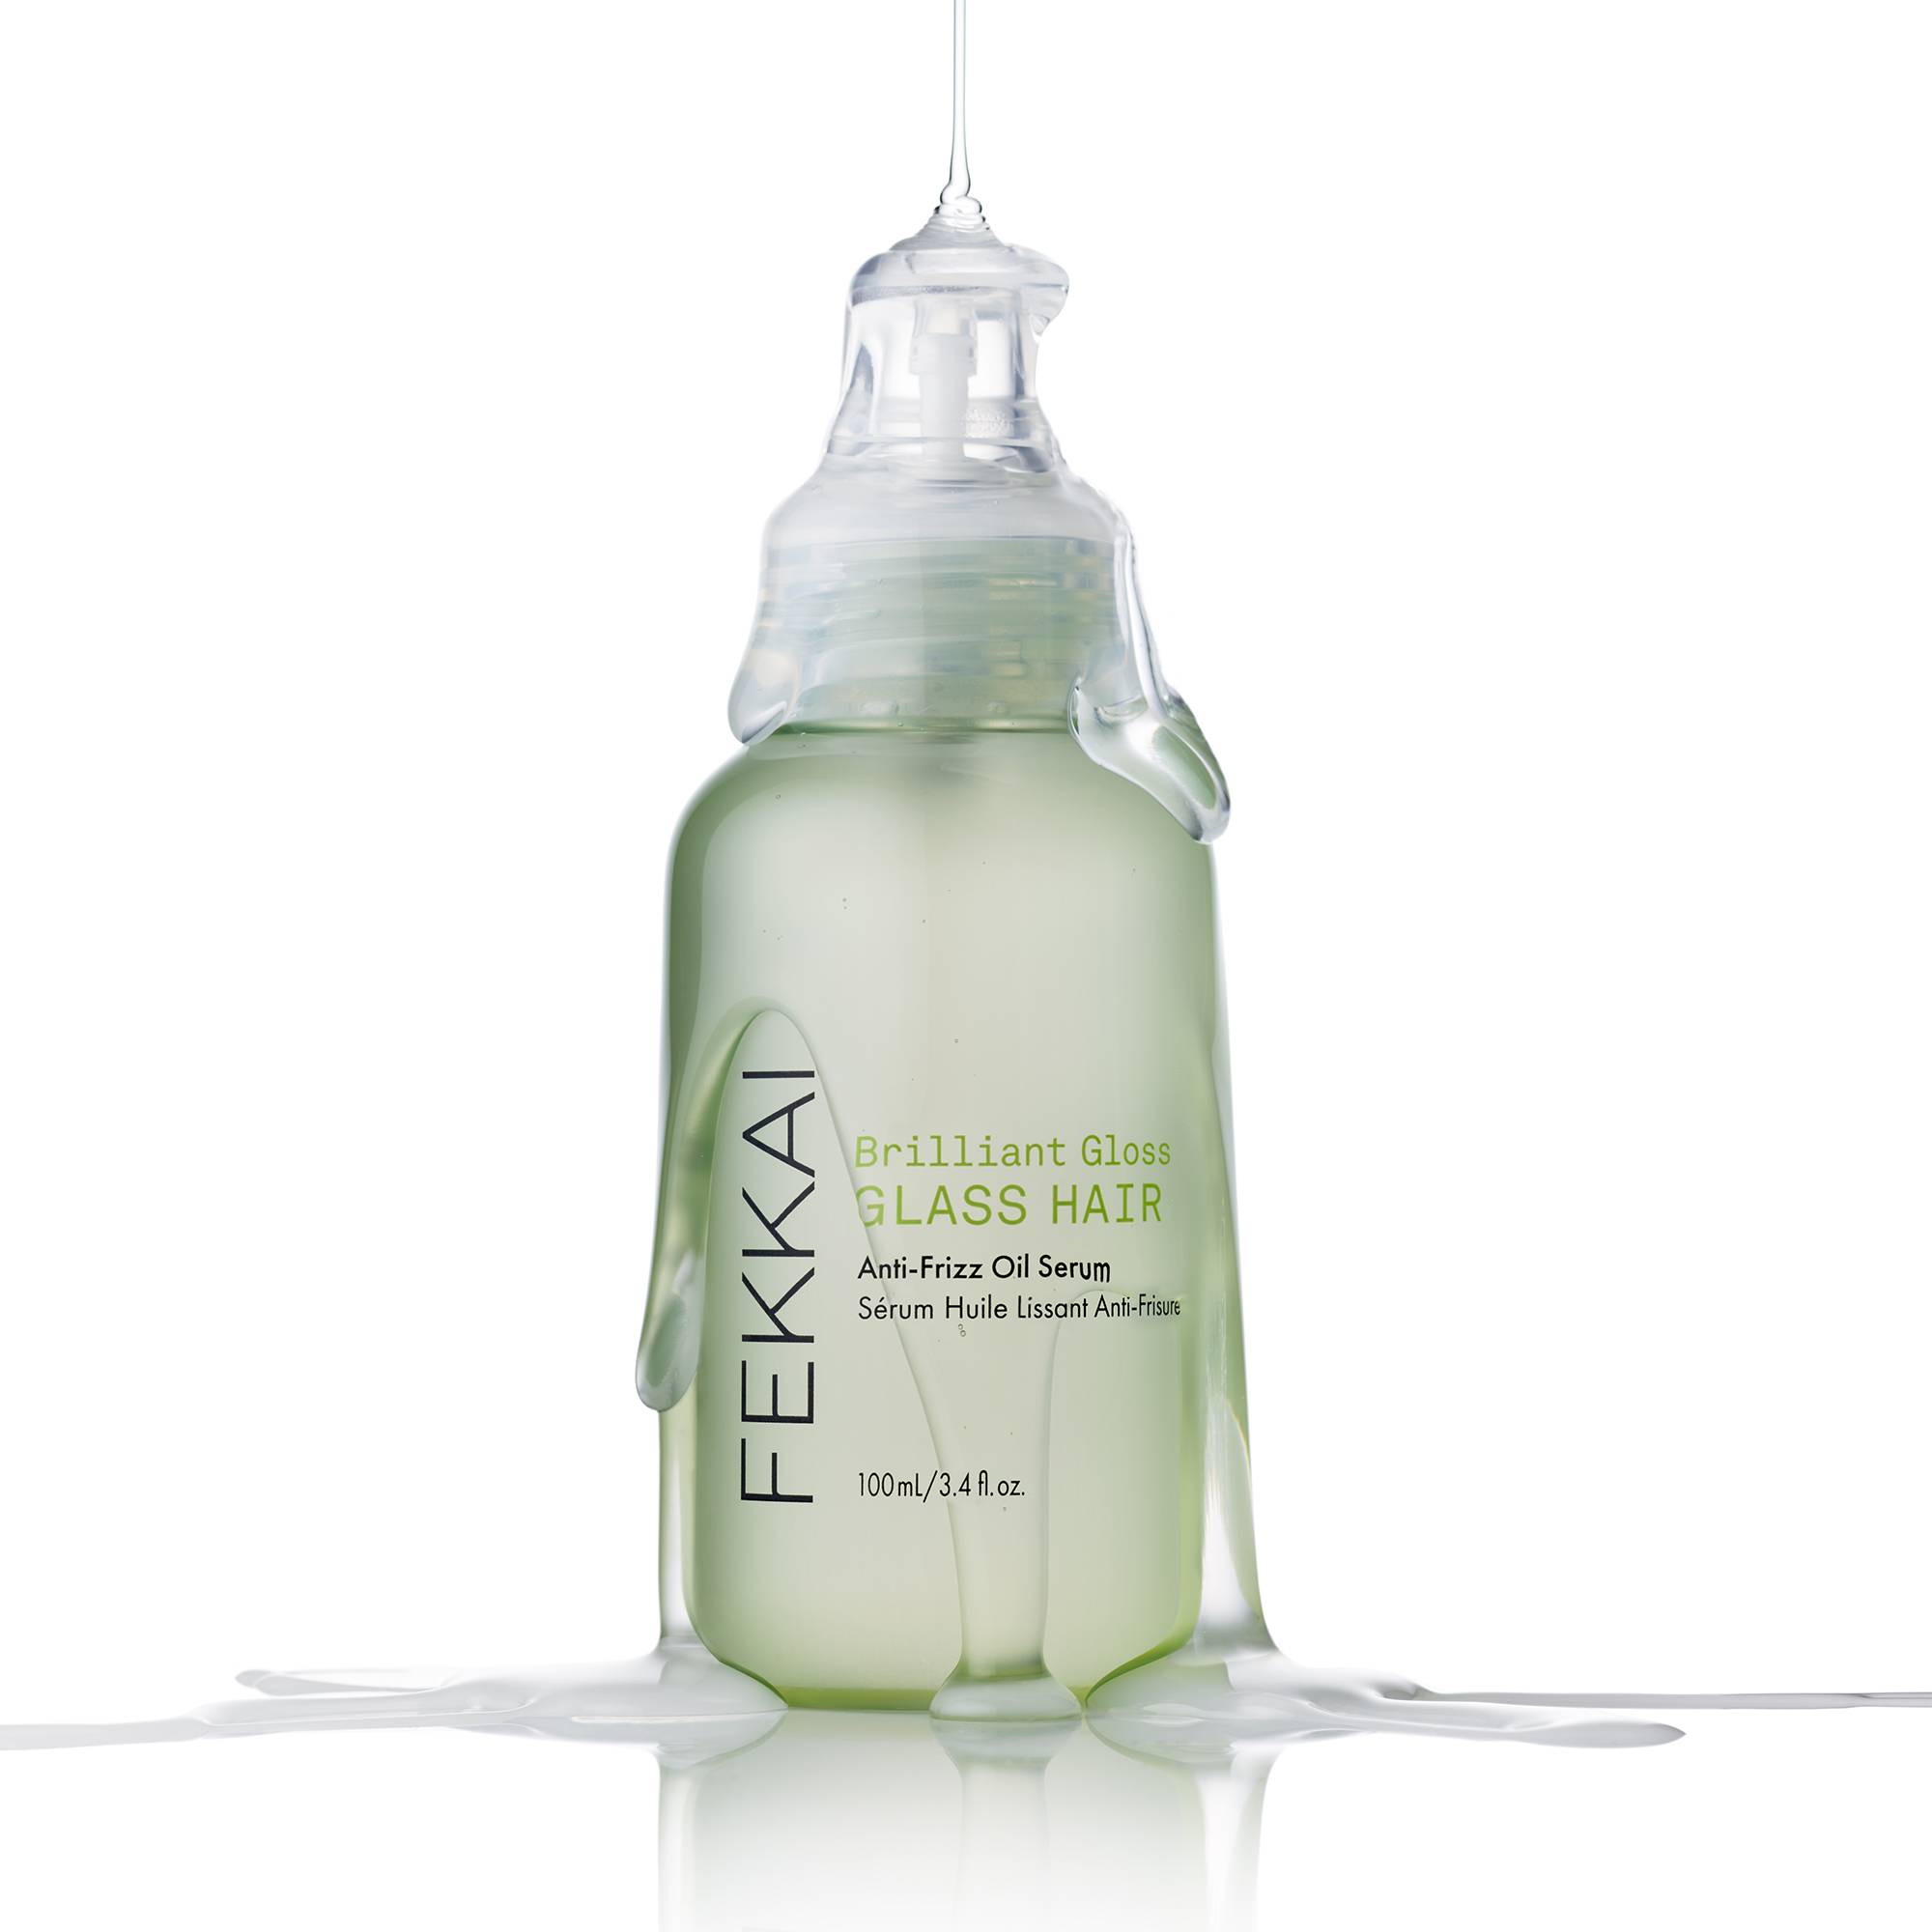 Sérum lissant anti-frisottis Brilliant Gloss Glass Hair de la marque Fekkai Contenance 100ml - 3